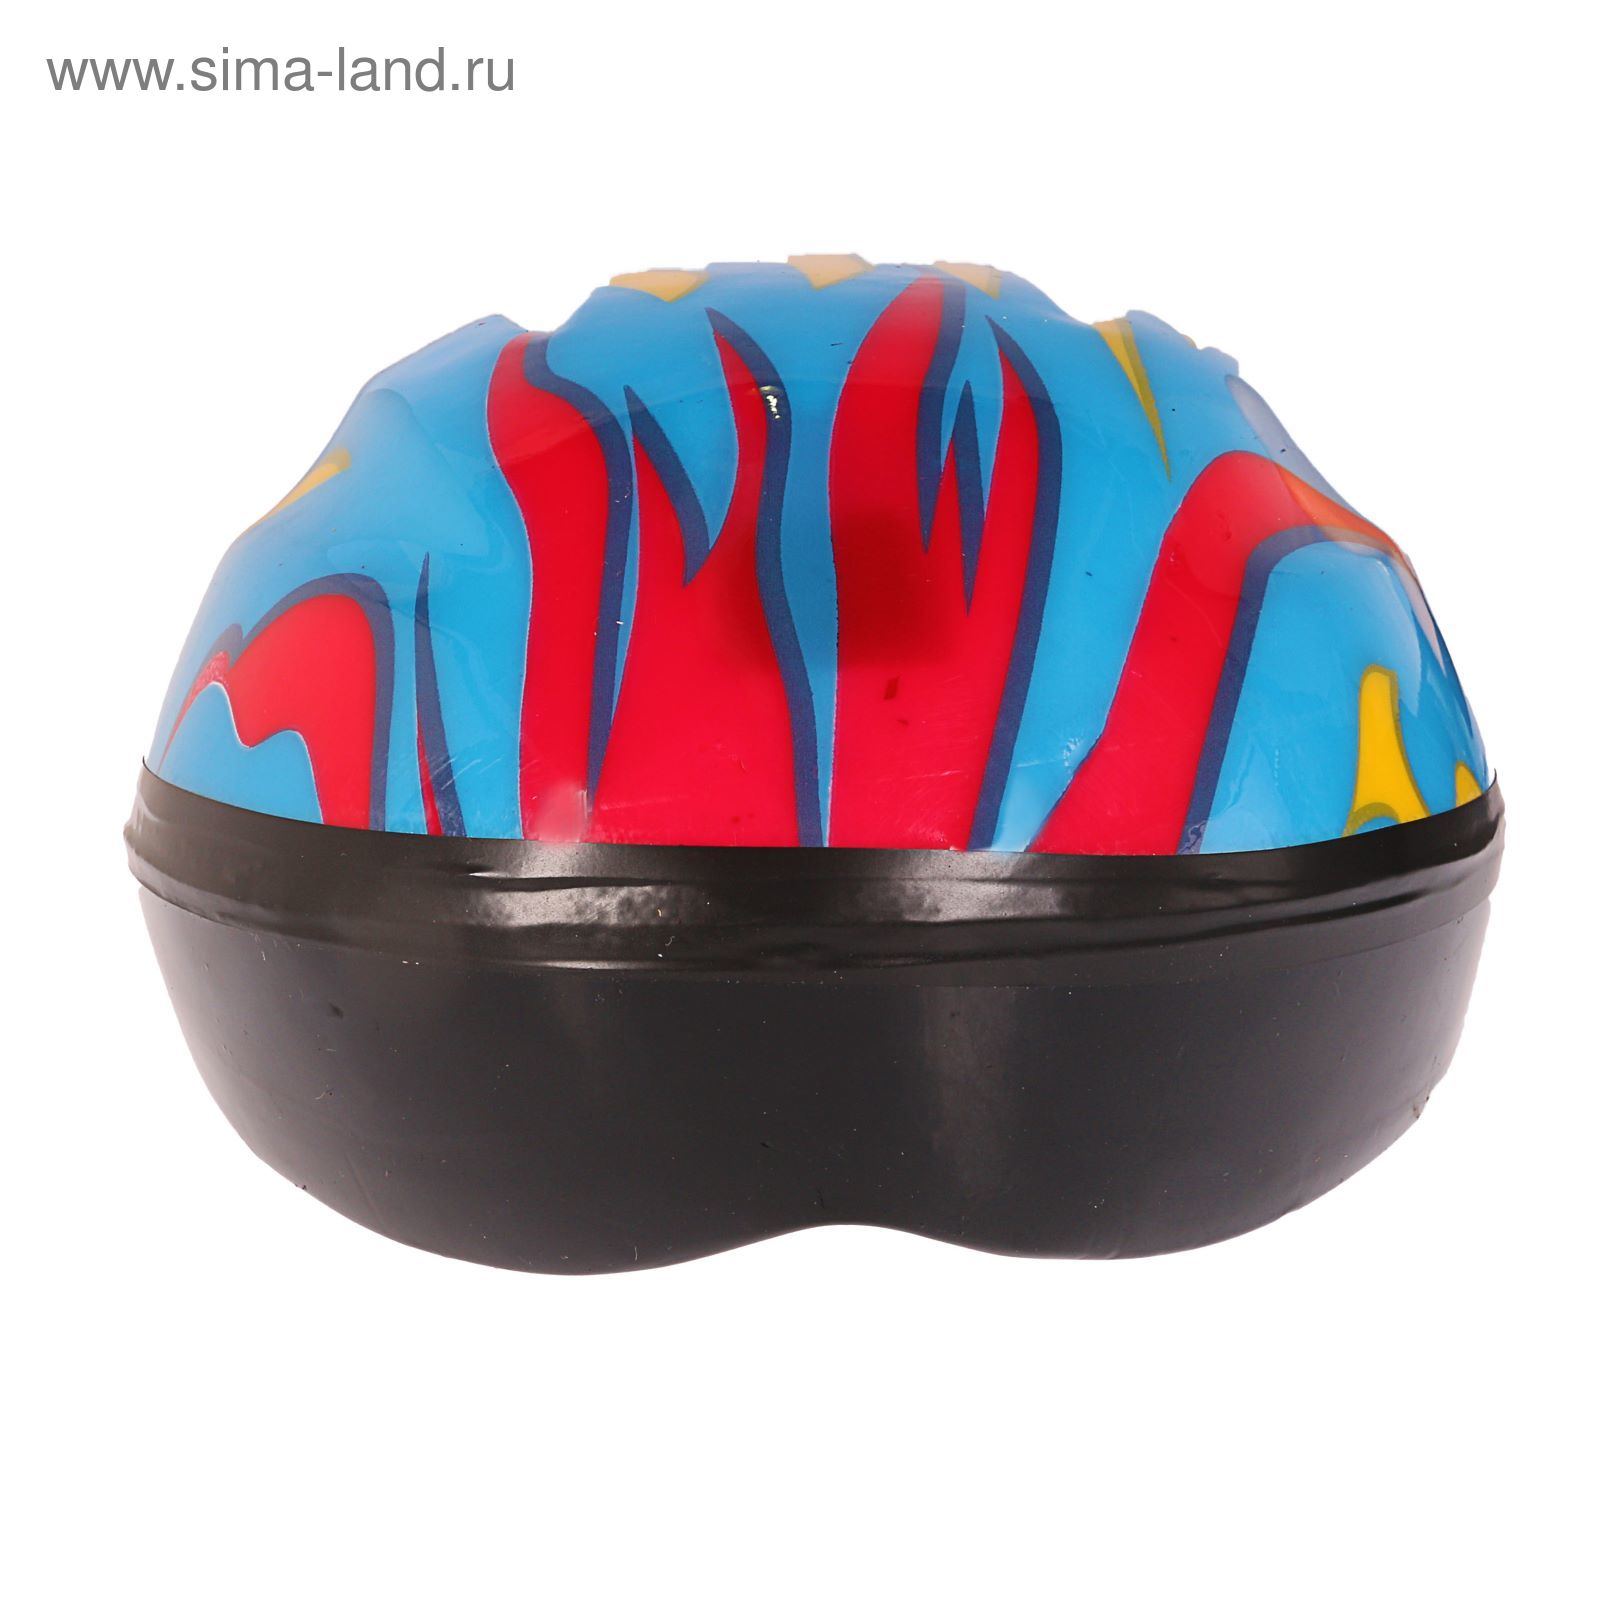 Шлем защитный детский OT-H6, размер S (52-54 см), цвет: синий